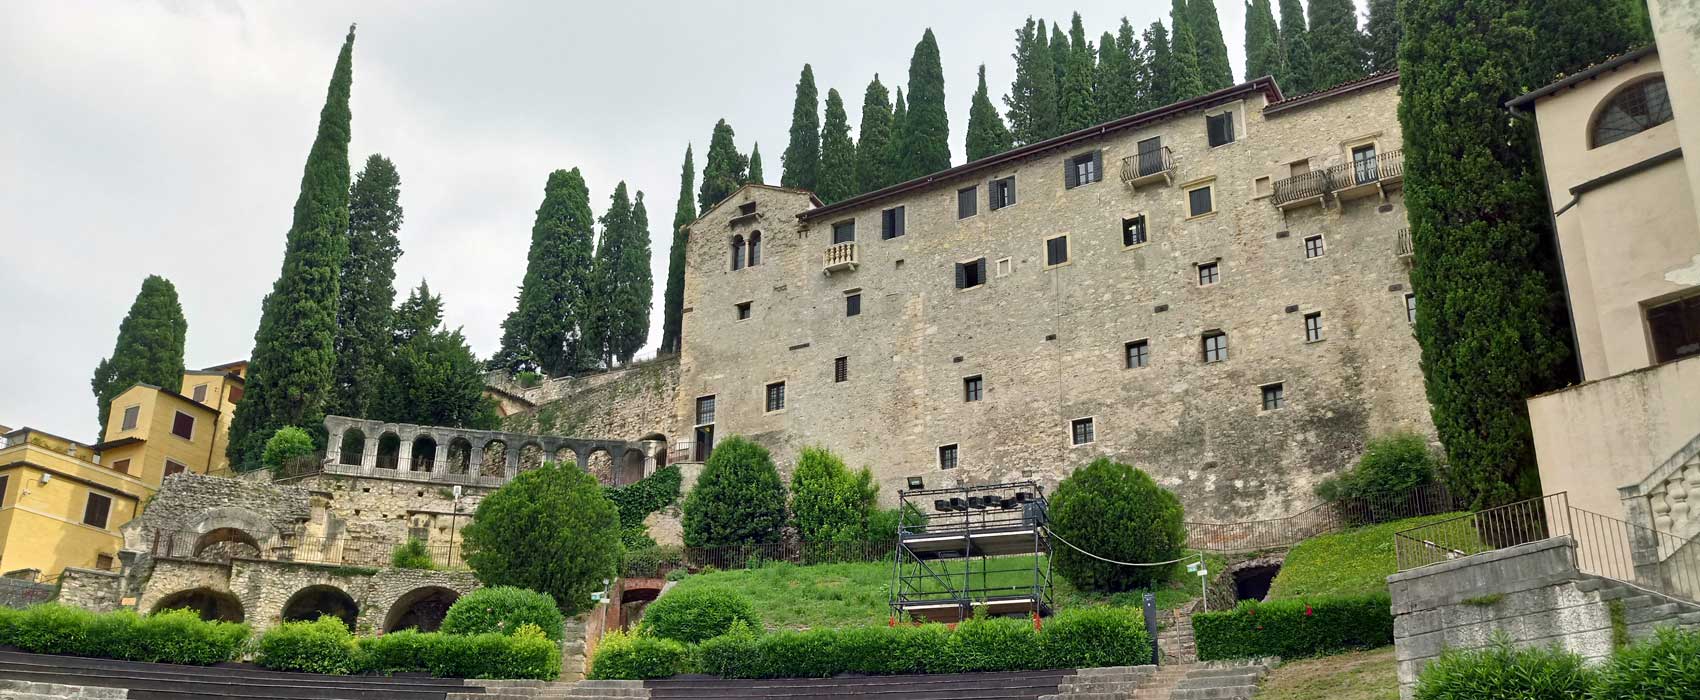 Das römische Theater unterhalb der Burg San Piedro.